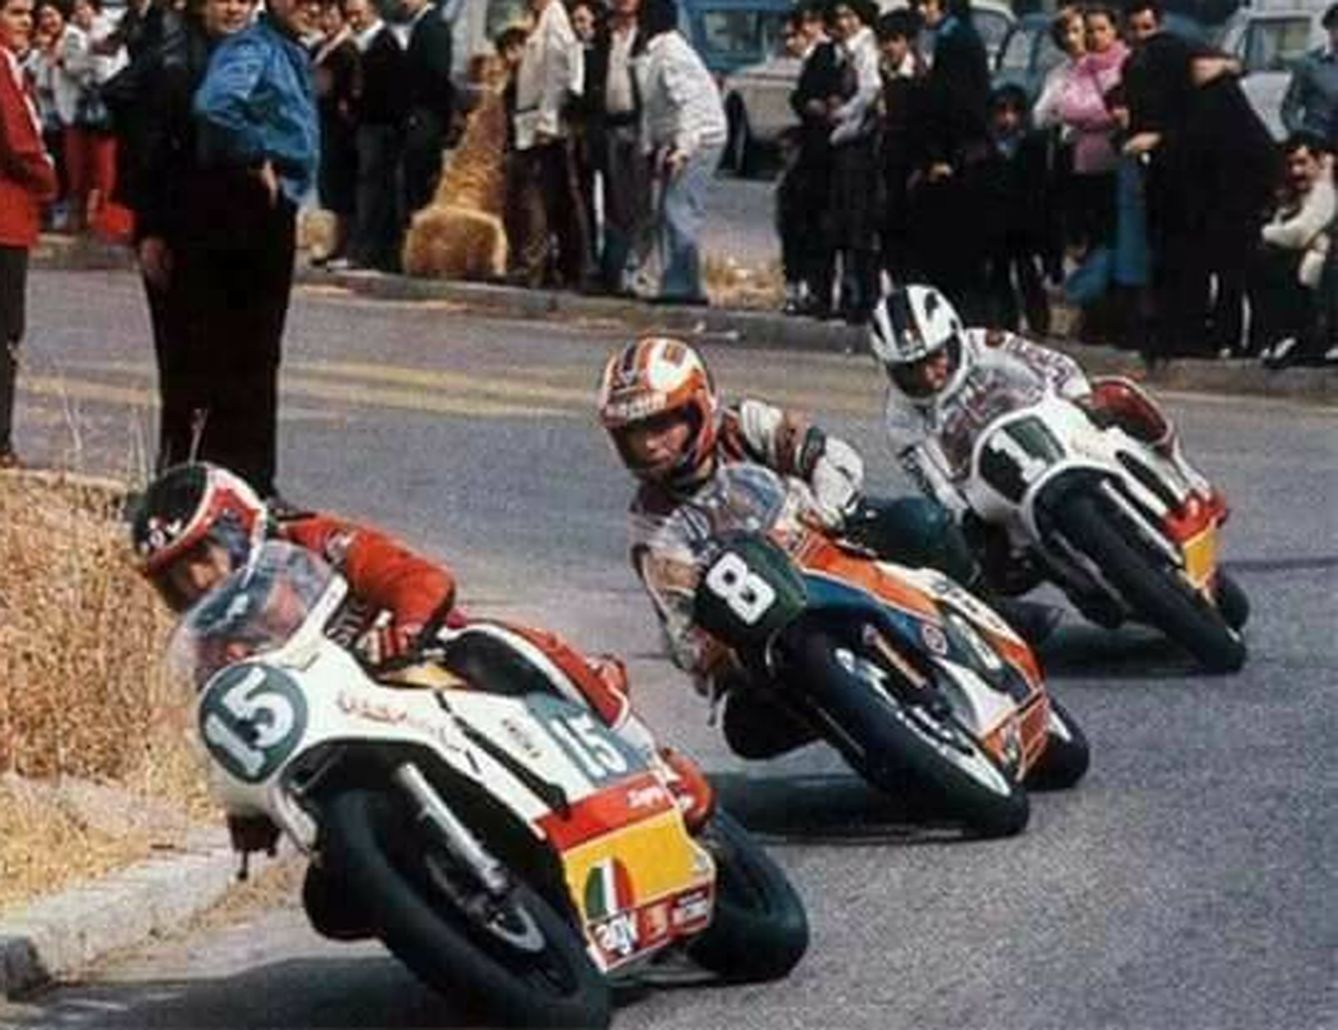 Ángel Nieto fue clave para que floreciera el talento de Sito Pons y Carlos Cardús (primero y segundo en la imagen), así como las motos de Antonio Cobas. (Facebook Sito Pons)